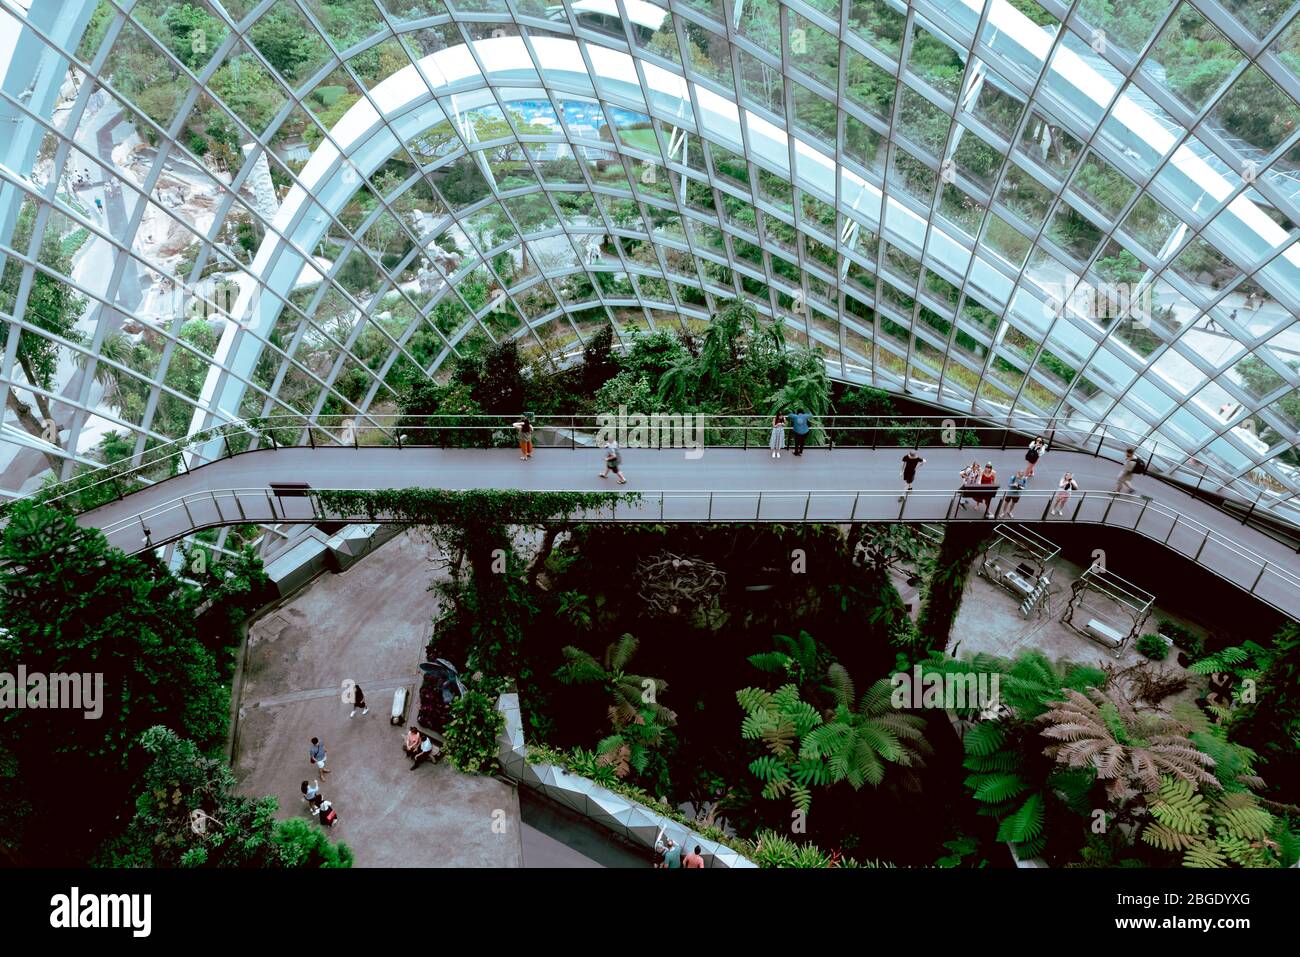 Singapore, Ottobre 2019: Cloud Forest Dome Conservatory at Gardens by the Bay in Singapore. Turisti che camminano sulle piattaforme all'interno della cupola di vetro della serra Foto Stock